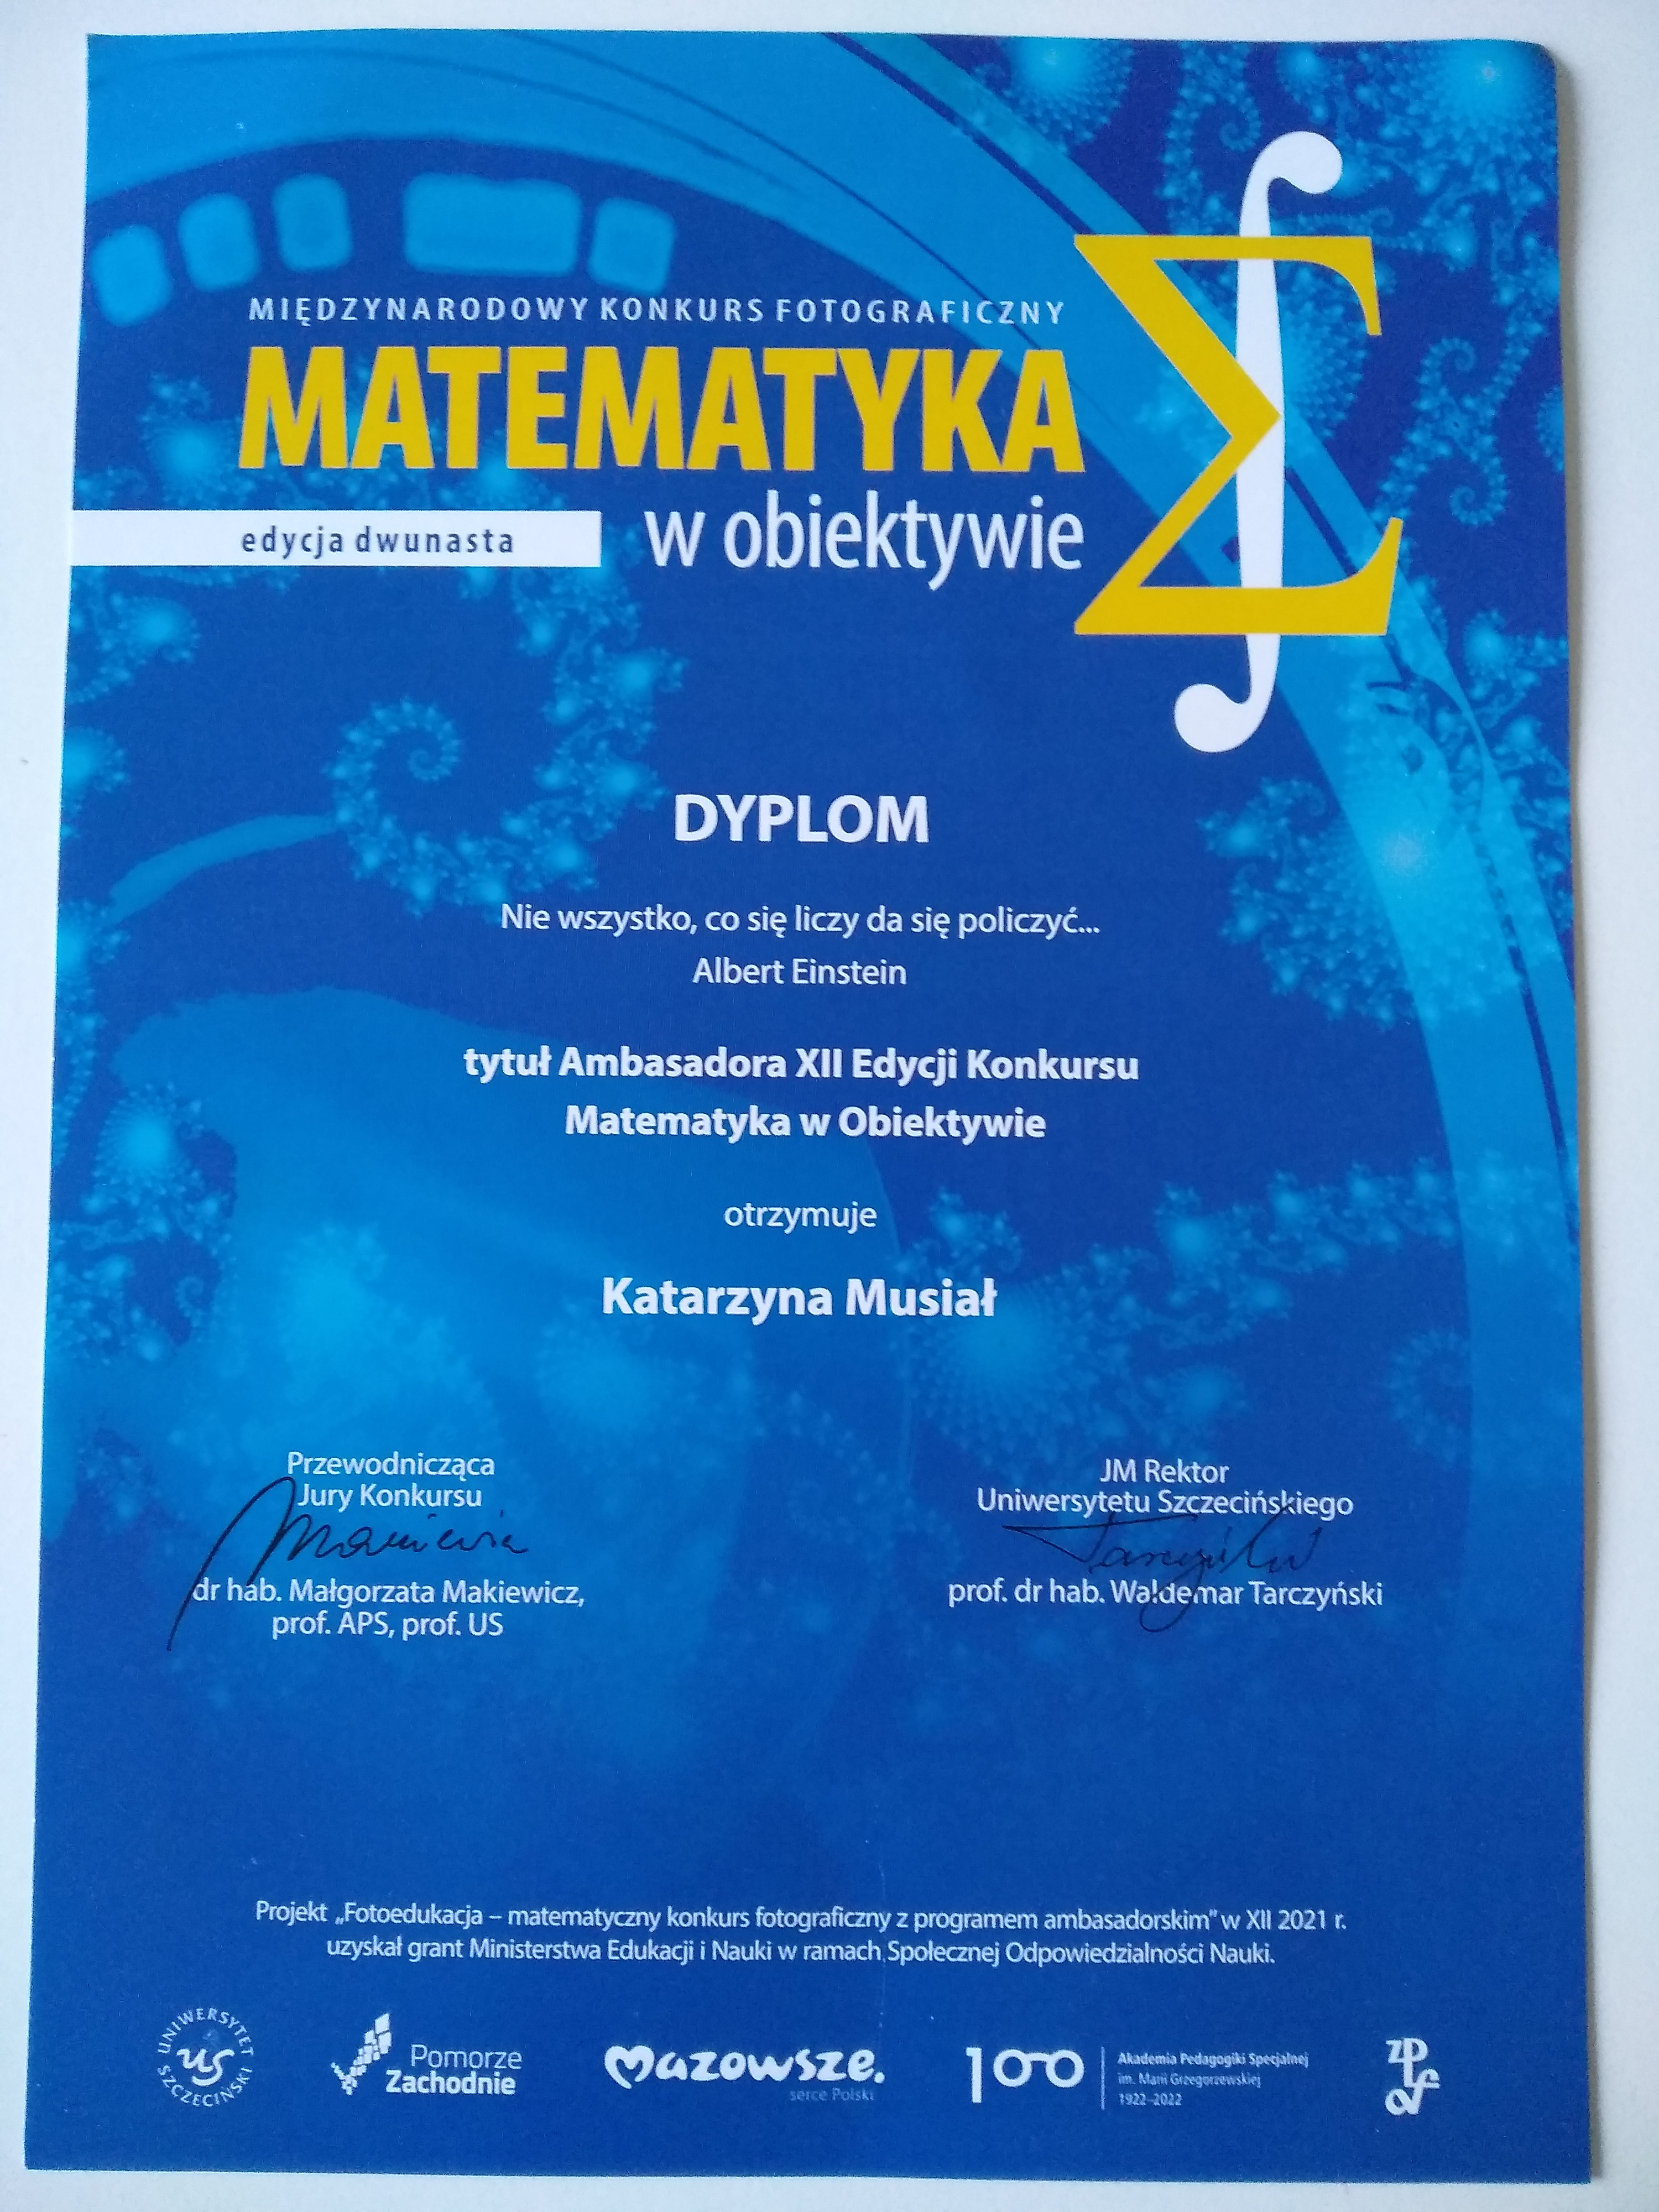 Matematyka w obiektywie - dyplom dla Katarzyny Musiał, nauczycielki matematyki